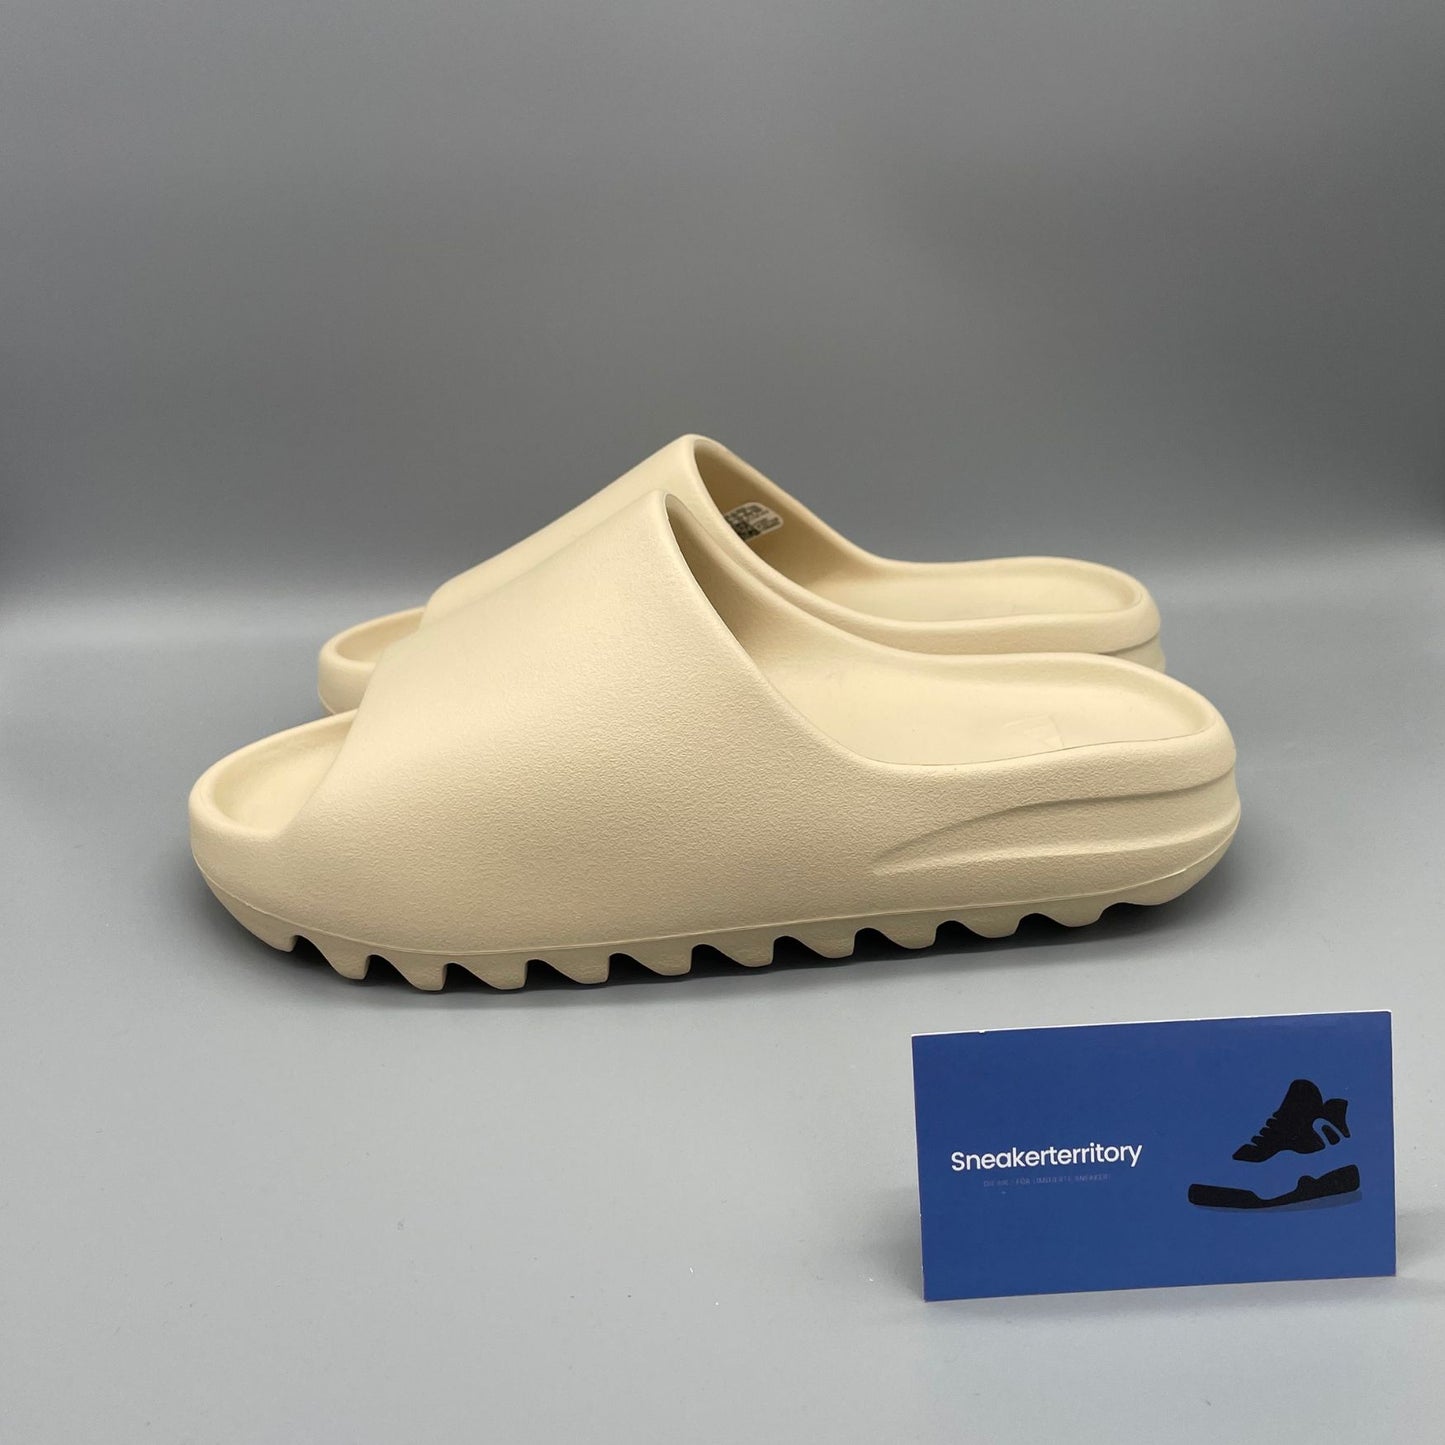 Adidas Yeezy Slide Bone - Sneakerterritory; Sneaker Territory 2